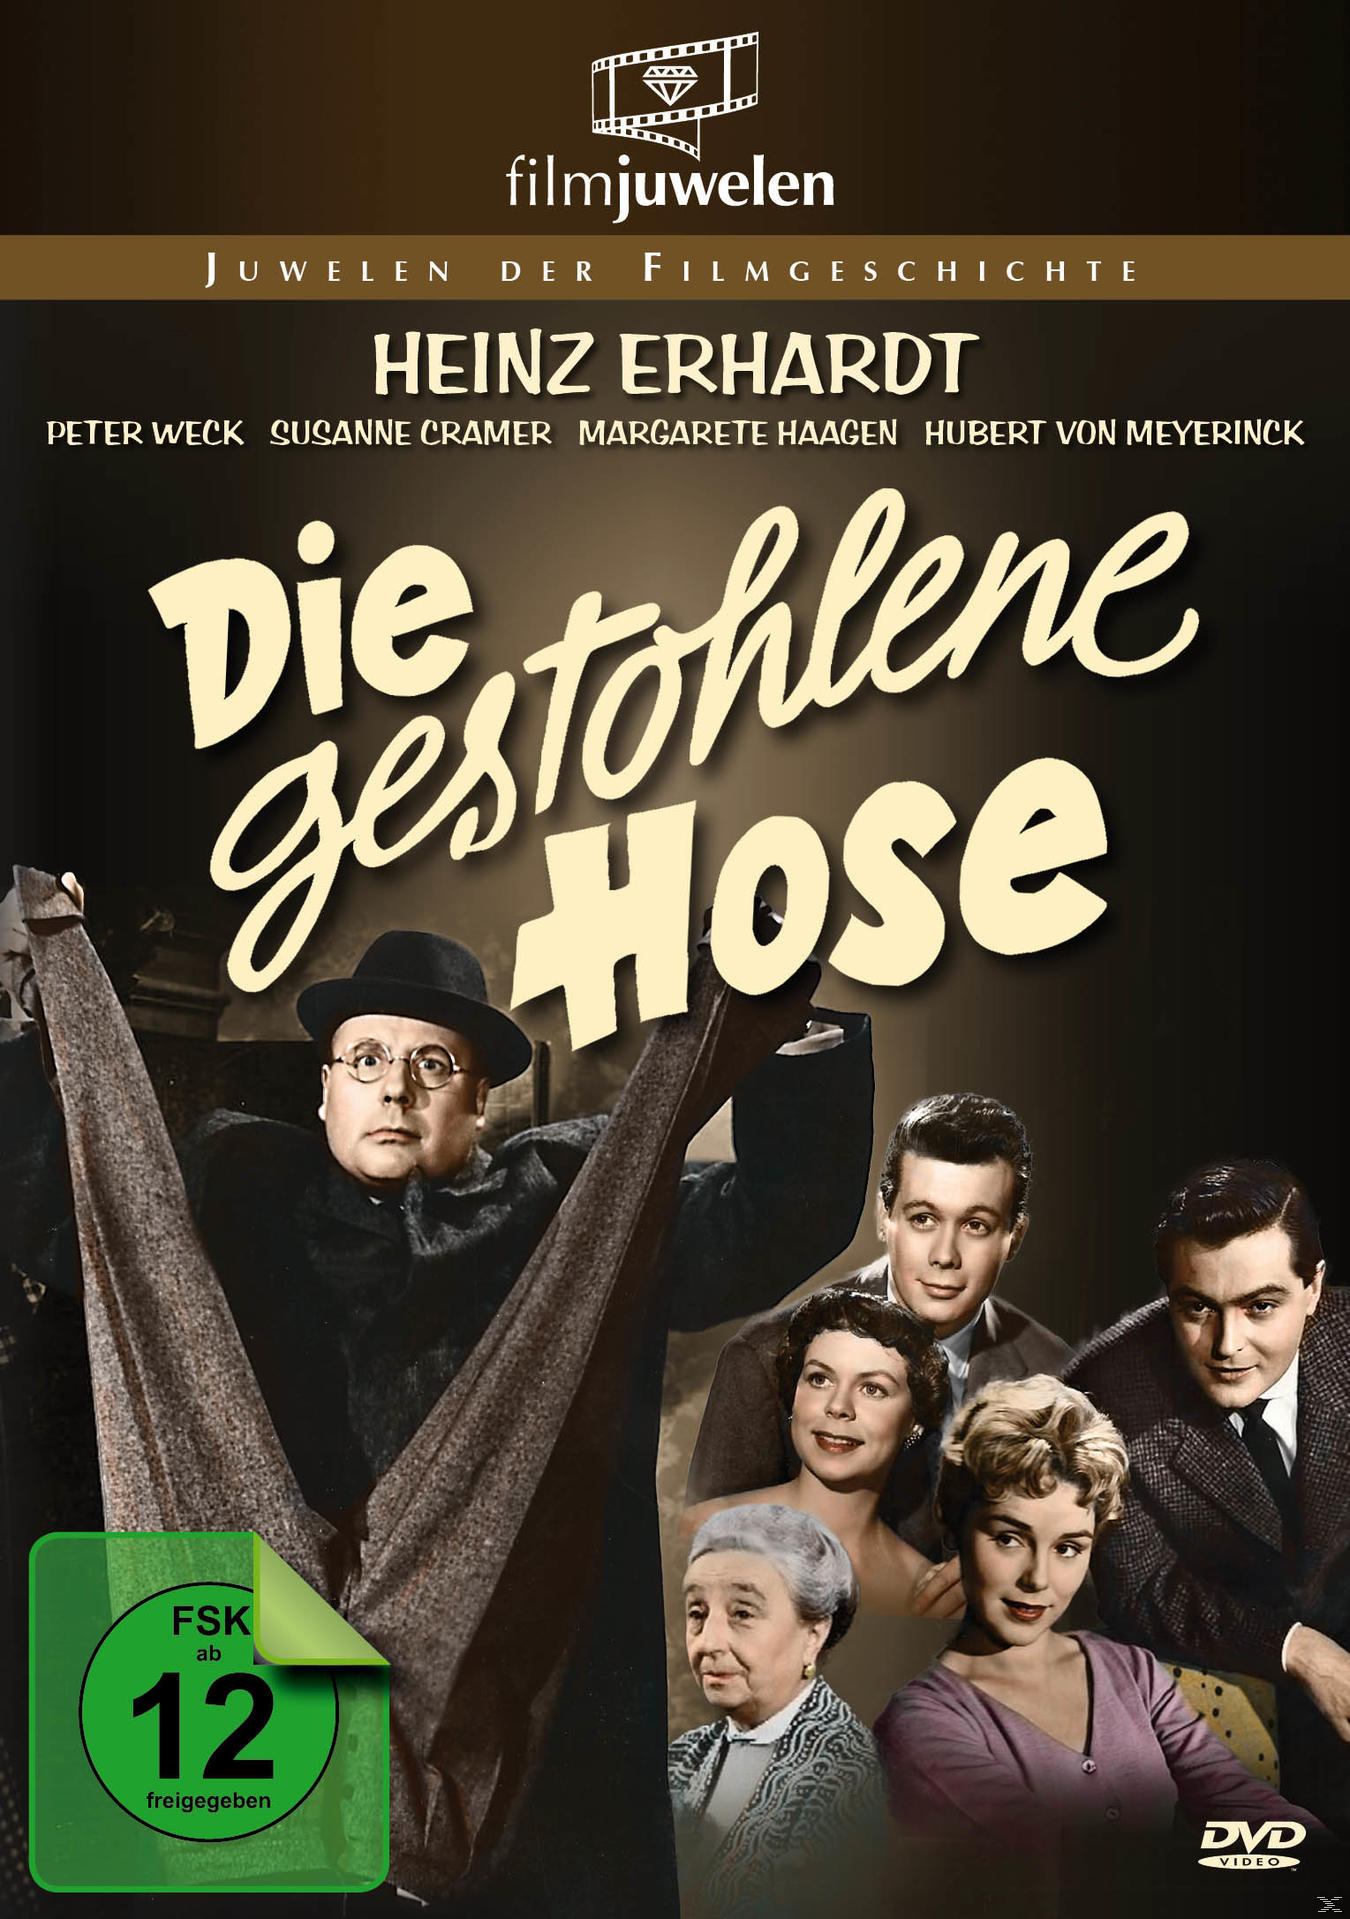 Heinz Erhardt: Die gestohlene Hose DVD